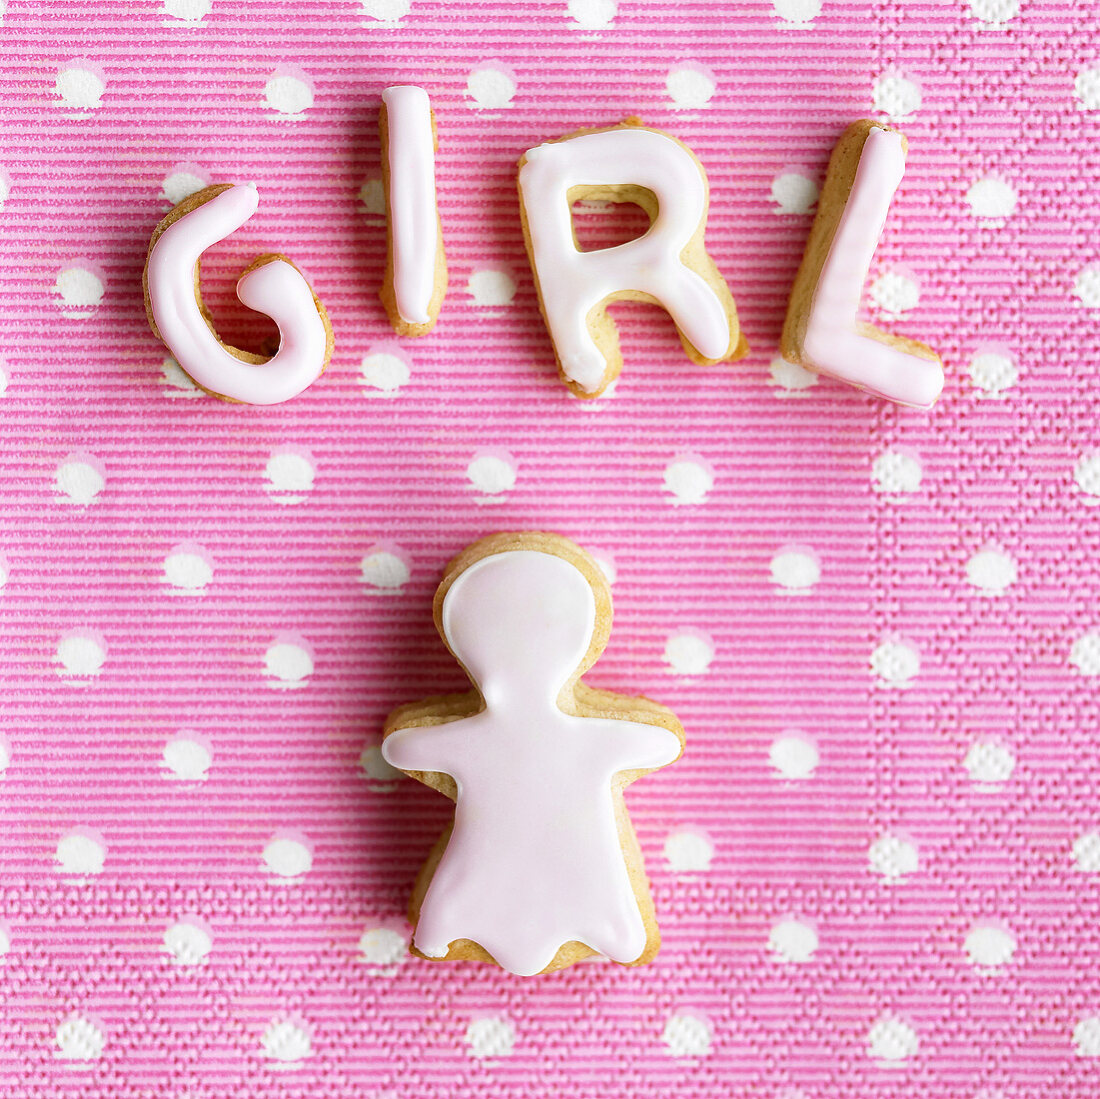 Gebackene Buchstaben 'Girl' und Figur auf einer Serviette